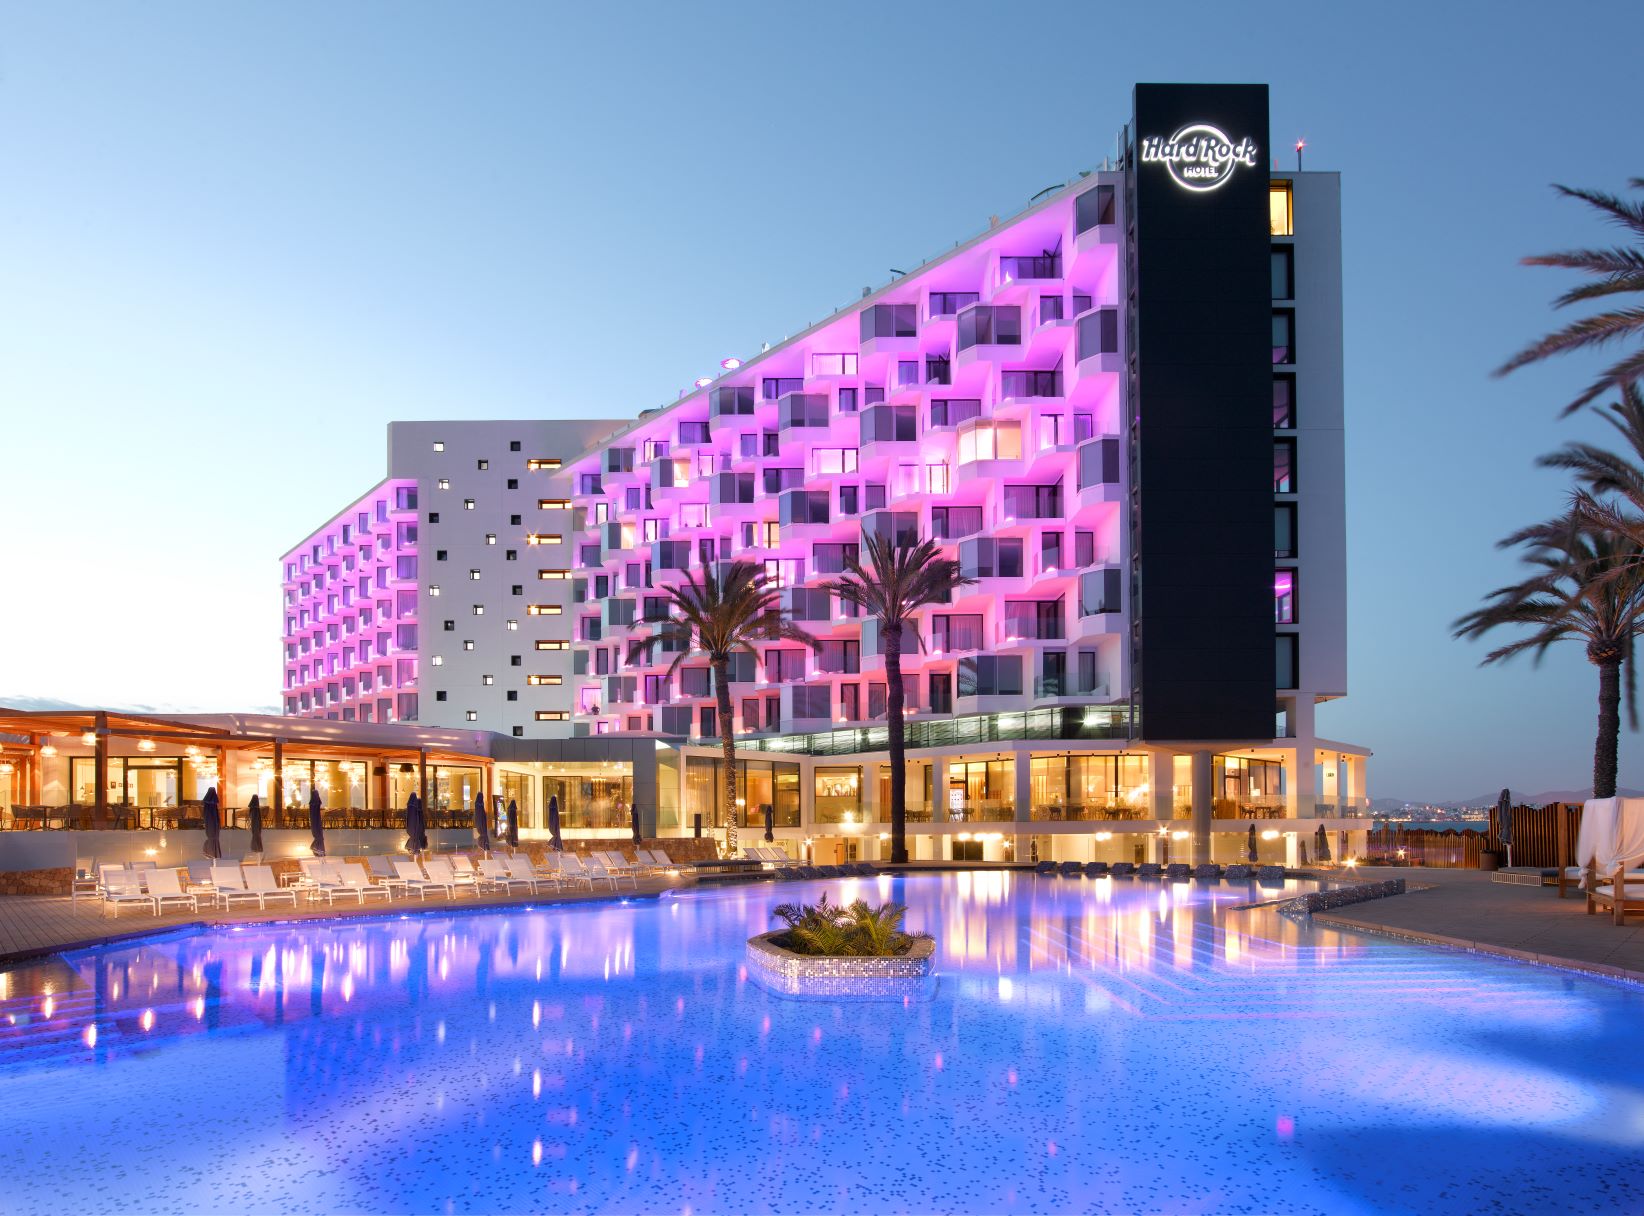 Hard Rock Hotel Ibiza wird Gastgeber beim Event-Pilotprojekt 25. Juni 2021